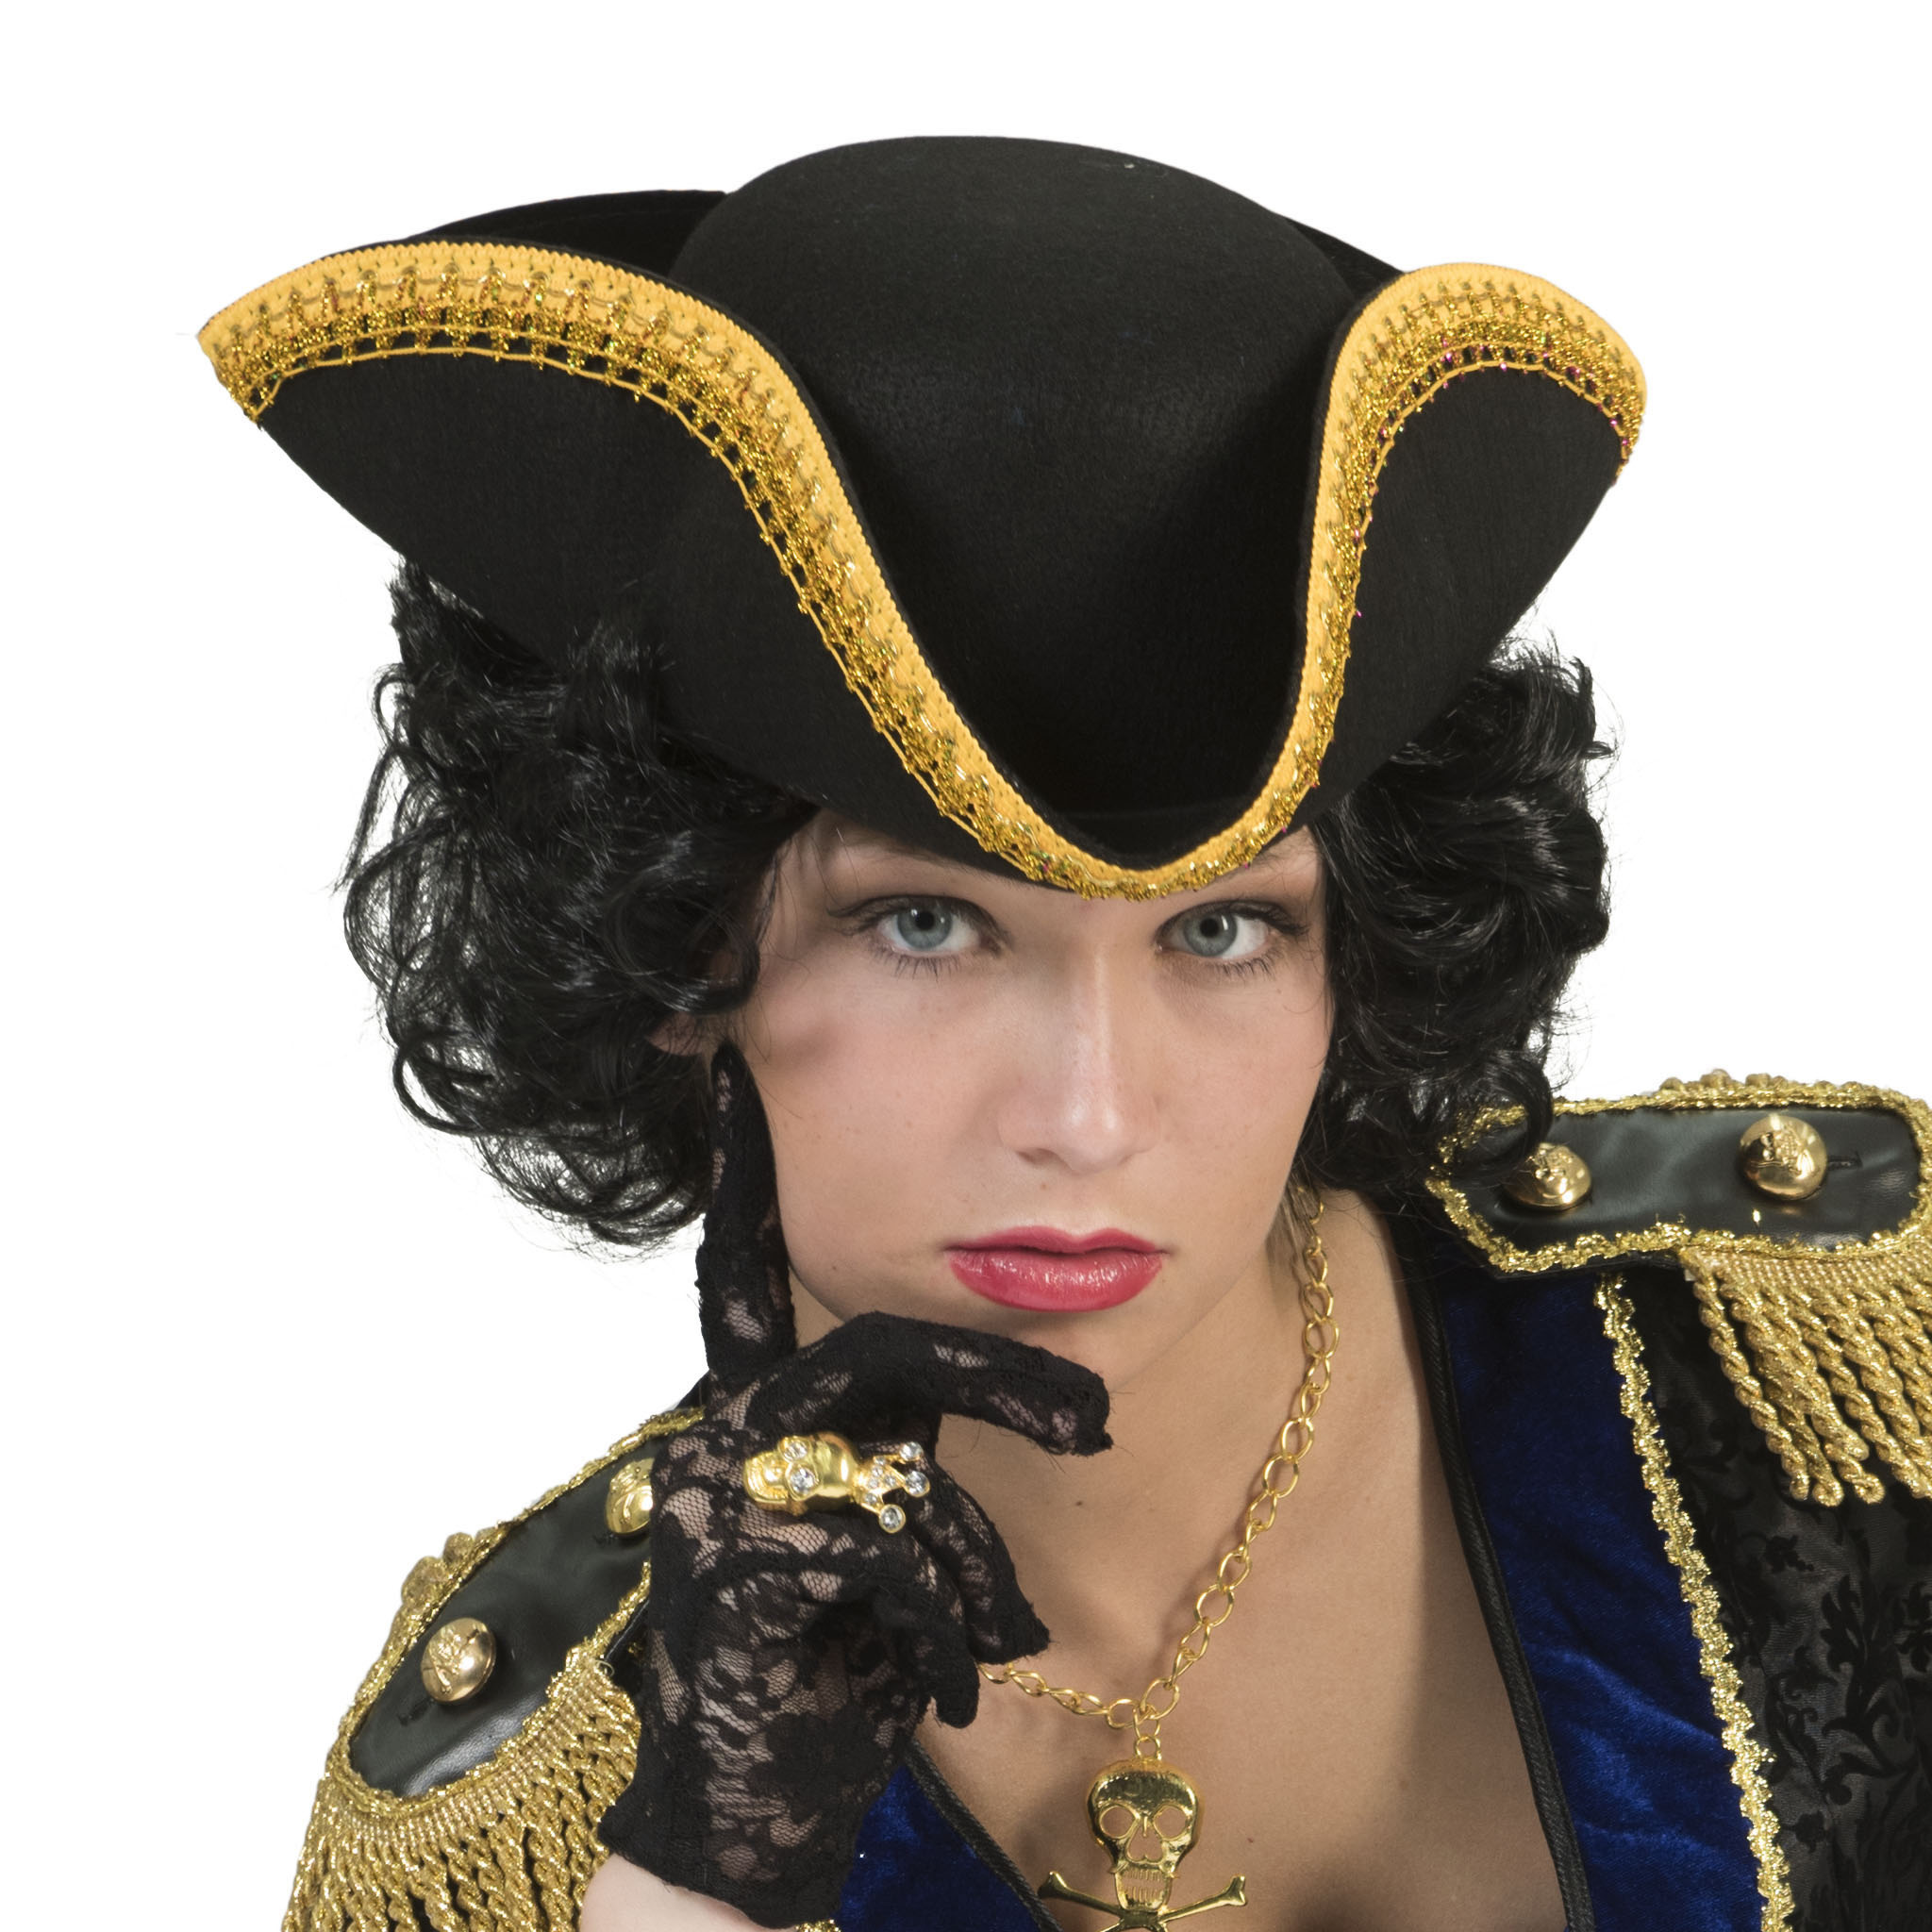 ESPA - Piraten hoed met goudkleurige rand voor volwassenen